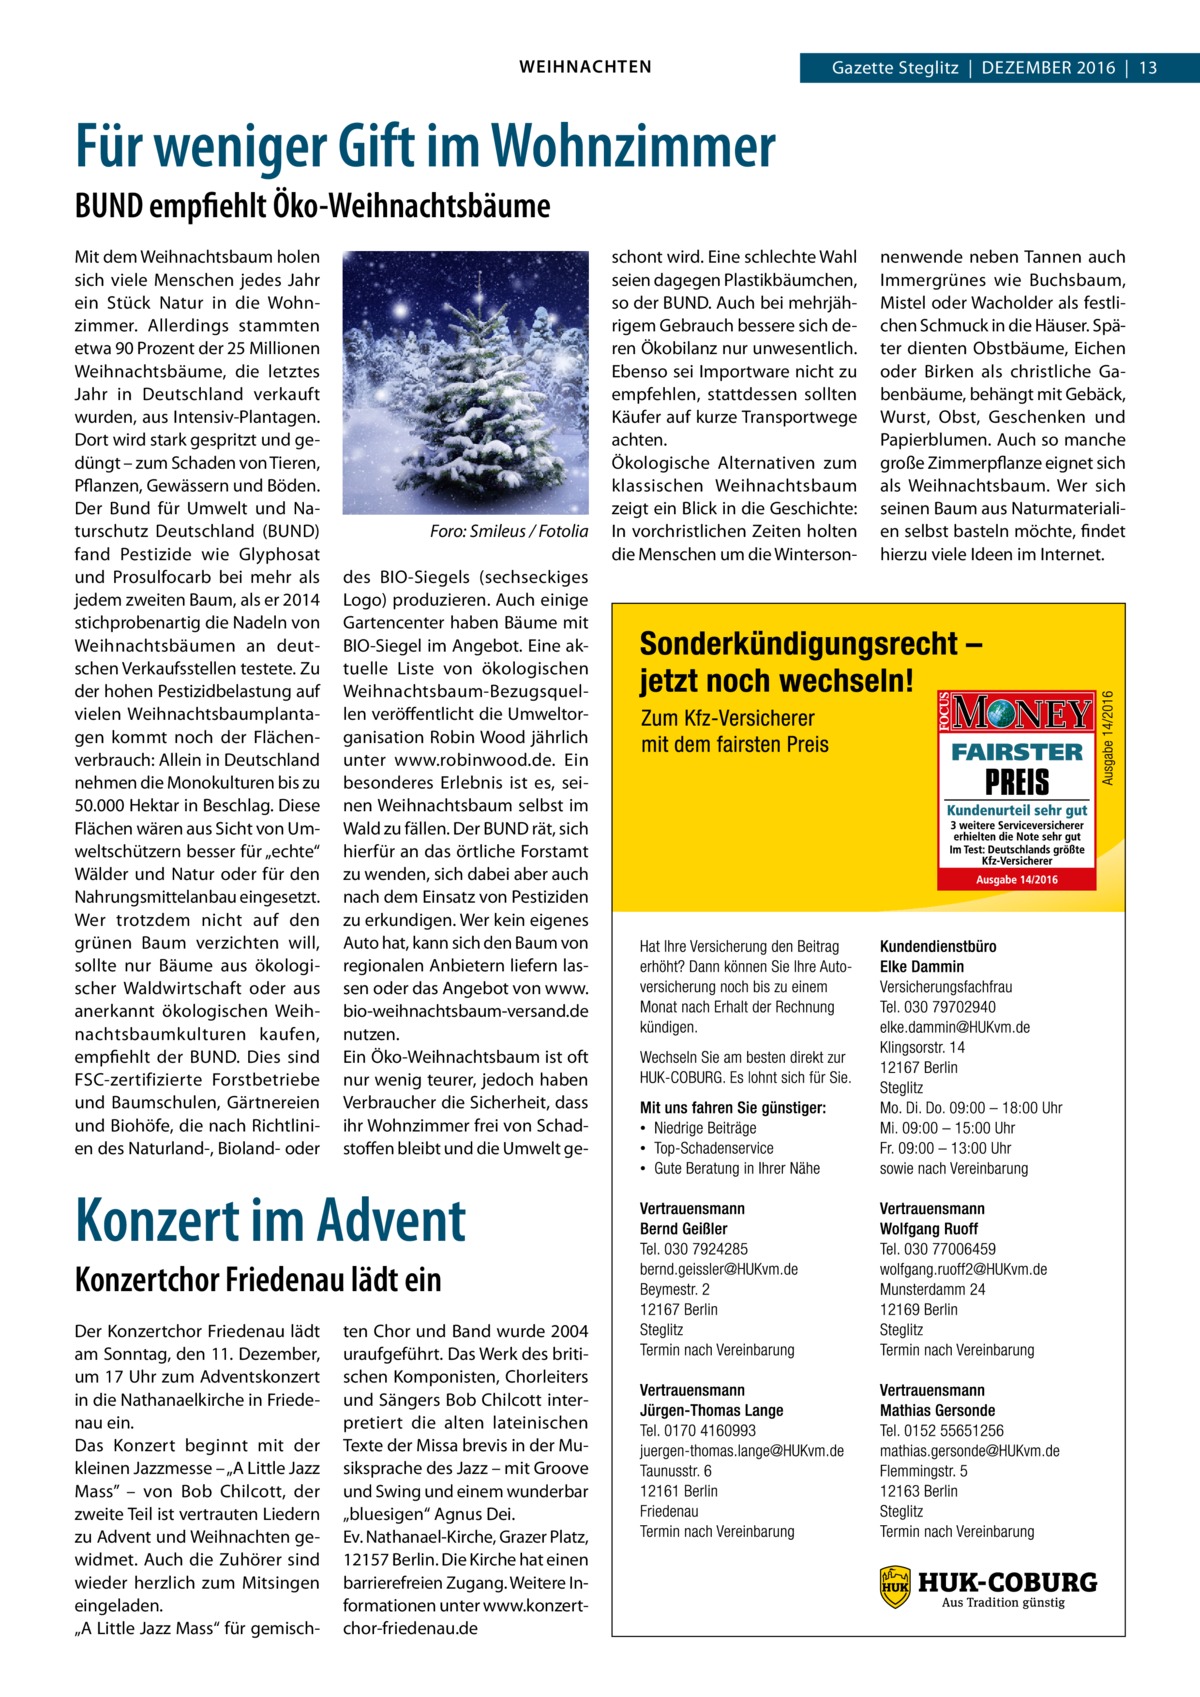 WEIHNACHTEN  Gazette Steglitz  |  Dezember 2016  |  13  Für weniger Gift im Wohnzimmer BUND empfiehlt Öko-Weihnachtsbäume Mit dem Weihnachtsbaum holen sich viele Menschen jedes Jahr ein Stück Natur in die Wohnzimmer. Allerdings stammten etwa 90 Prozent der 25 Millionen Weihnachtsbäume, die letztes Jahr in Deutschland verkauft wurden, aus Intensiv-Plantagen. Dort wird stark gespritzt und gedüngt – zum Schaden von Tieren, Pflanzen, Gewässern und Böden. Der Bund für Umwelt und Naturschutz Deutschland (BUND) fand Pestizide wie Glyphosat und Prosulfocarb bei mehr als jedem zweiten Baum, als er 2014 stichprobenartig die Nadeln von Weihnachtsbäumen an deutschen Verkaufsstellen testete. Zu der hohen Pestizidbelastung auf vielen Weihnachtsbaumplantagen kommt noch der Flächenverbrauch: Allein in Deutschland nehmen die Monokulturen bis zu 50.000 Hektar in Beschlag. Diese Flächen wären aus Sicht von Umweltschützern besser für „echte“ Wälder und Natur oder für den Nahrungsmittelanbau eingesetzt. Wer trotzdem nicht auf den grünen Baum verzichten will, sollte nur Bäume aus ökologischer Waldwirtschaft oder aus anerkannt ökologischen Weihnachtsbaumkulturen kaufen, empfiehlt der BUND. Dies sind FSC-zertifizierte Forstbetriebe und Baumschulen, Gärtnereien und Biohöfe, die nach Richtlinien des Naturland-, Bioland- oder  �  Foro: Smileus / Fotolia  des BIO-Siegels (sechseckiges Logo) produzieren. Auch einige Gartencenter haben Bäume mit BIO-Siegel im Angebot. Eine aktuelle Liste von ökologischen Weihnachtsbaum-Bezugsquellen veröffentlicht die Umweltorganisation Robin Wood jährlich unter www.robinwood.de. Ein besonderes Erlebnis ist es, seinen Weihnachtsbaum selbst im Wald zu fällen. Der BUND rät, sich hierfür an das örtliche Forstamt zu wenden, sich dabei aber auch nach dem Einsatz von Pestiziden zu erkundigen. Wer kein eigenes Auto hat, kann sich den Baum von regionalen Anbietern liefern lassen oder das Angebot von www. bio-weihnachtsbaum-versand.de nutzen. Ein Öko-Weihnachtsbaum ist oft nur wenig teurer, jedoch haben Verbraucher die Sicherheit, dass ihr Wohnzimmer frei von Schadstoffen bleibt und die Umwelt ge Konzert im Advent Konzertchor Friedenau lädt ein Der Konzertchor Friedenau lädt am Sonntag, den 11. Dezember, um 17 Uhr zum Adventskonzert in die Nathanaelkirche in Friedenau ein. Das Konzert beginnt mit der kleinen Jazzmesse – „A Little Jazz Mass” – von Bob Chilcott, der zweite Teil ist vertrauten Liedern zu Advent und Weihnachten gewidmet. Auch die Zuhörer sind wieder herzlich zum Mitsingen eingeladen. „A Little Jazz Mass“ für gemisch ten Chor und Band wurde 2004 uraufgeführt. Das Werk des britischen Komponisten, Chorleiters und Sängers Bob Chilcott interpretiert die alten lateinischen Texte der Missa brevis in der Musiksprache des Jazz – mit Groove und Swing und einem wunderbar „bluesigen“ Agnus Dei. Ev. Nathanael-Kirche, Grazer Platz, 12157 Berlin. Die Kirche hat einen barrierefreien Zugang. Weitere Informationen unter www.konzertchor-friedenau.de  schont wird. Eine schlechte Wahl seien dagegen Plastikbäumchen, so der BUND. Auch bei mehrjährigem Gebrauch bessere sich deren Ökobilanz nur unwesentlich. Ebenso sei Importware nicht zu empfehlen, stattdessen sollten Käufer auf kurze Transportwege achten. Ökologische Alternativen zum klassischen Weihnachtsbaum zeigt ein Blick in die Geschichte: In vorchristlichen Zeiten holten die Menschen um die Winterson nenwende neben Tannen auch Immergrünes wie Buchsbaum, Mistel oder Wacholder als festlichen Schmuck in die Häuser. Später dienten Obstbäume, Eichen oder Birken als christliche Gabenbäume, behängt mit Gebäck, Wurst, Obst, Geschenken und Papierblumen. Auch so manche große Zimmerpflanze eignet sich als Weihnachtsbaum. Wer sich seinen Baum aus Naturmaterialien selbst basteln möchte, findet hierzu viele Ideen im Internet.